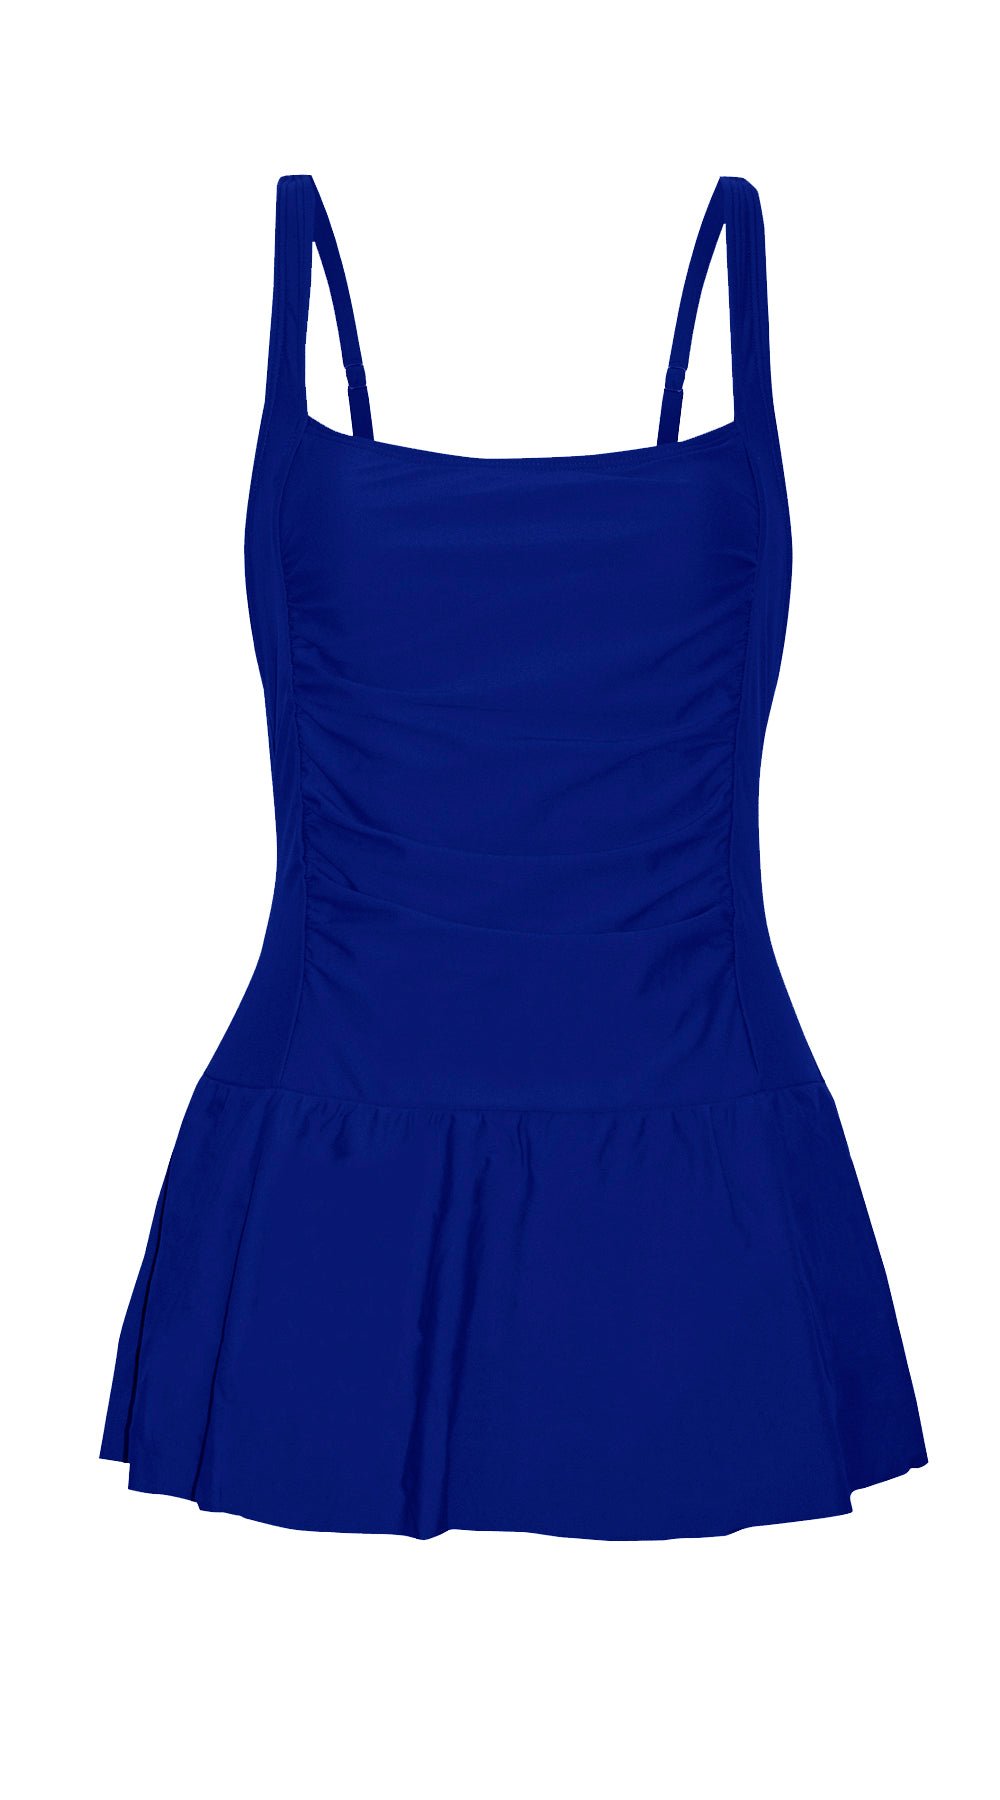 Essentials Ruched Swim Dress (Navy) - Bare Essentials
One Piece Skirt Swimsuits